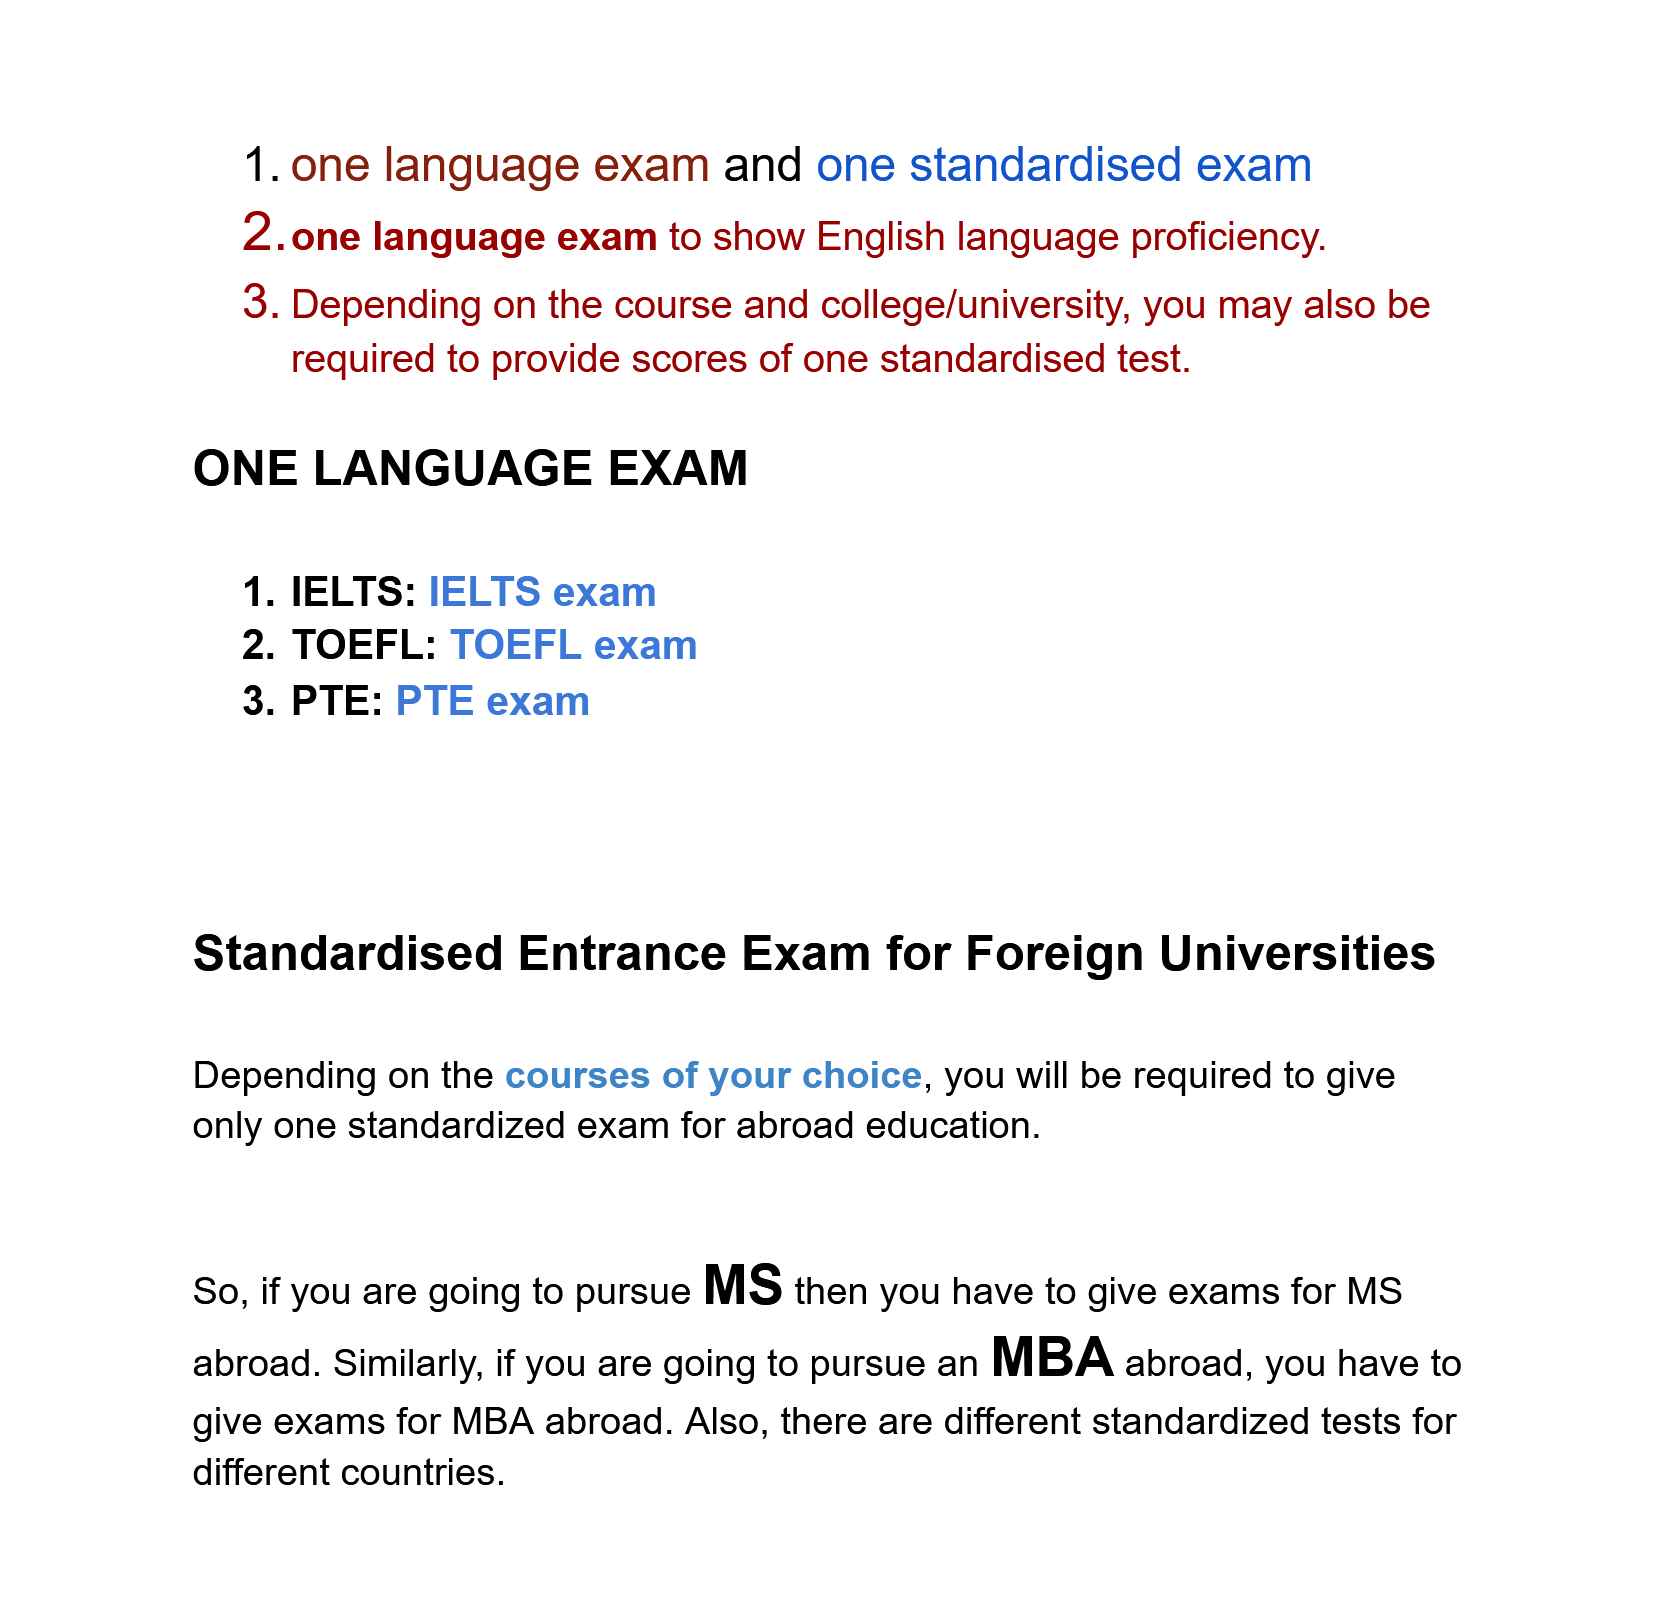 One Language Exam and One Standardized Exam